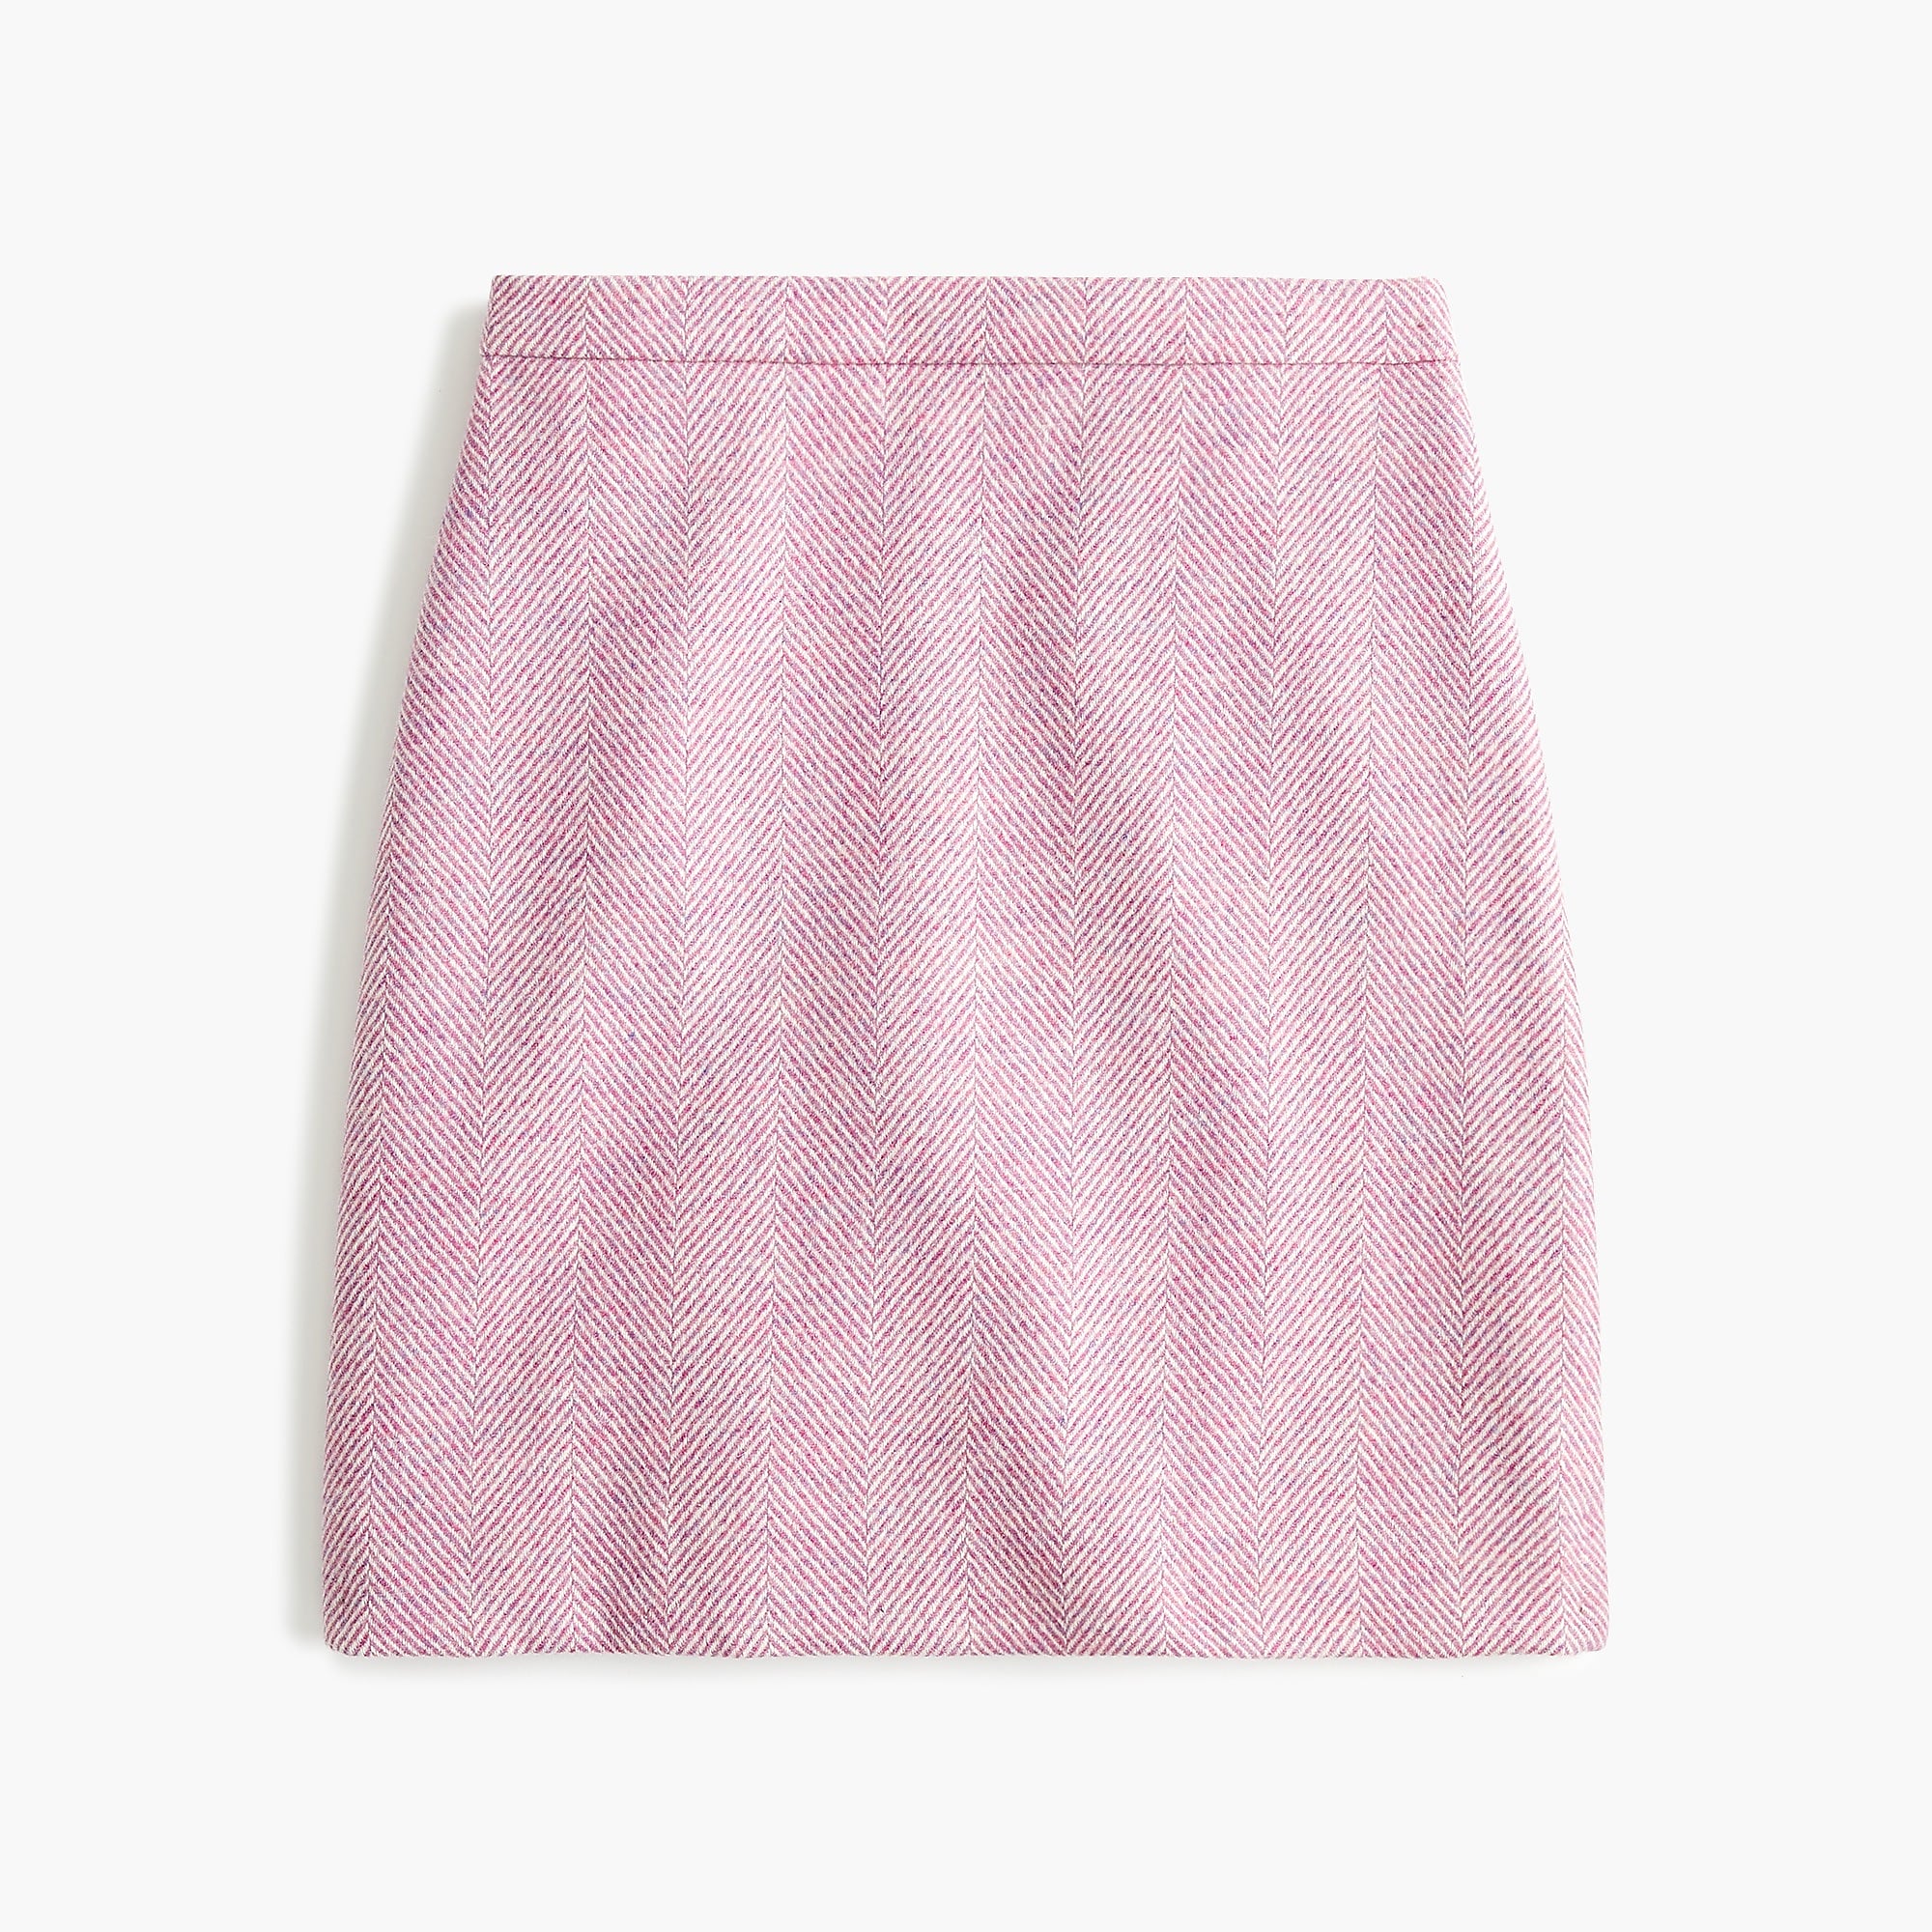 J.Crew + Wool mini skirt in herringbone